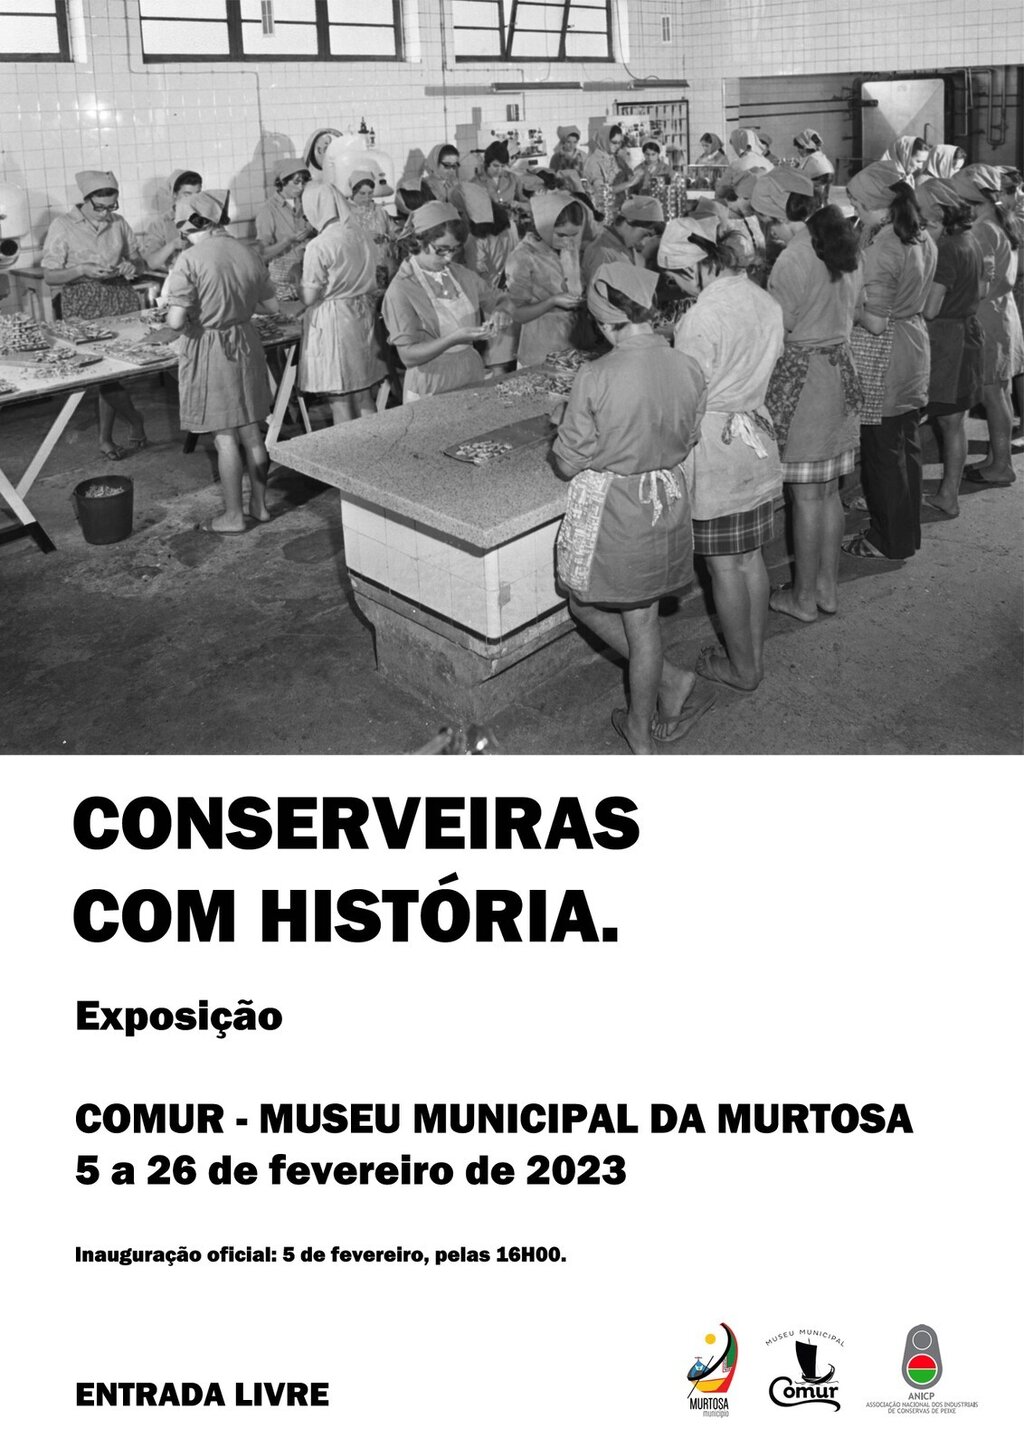 COMUR – MUSEU MUNICIPAL DA MURTOSA RECEBE EXPOSIÇÃO “CONSERVEIRAS COM HISTÓRIA”